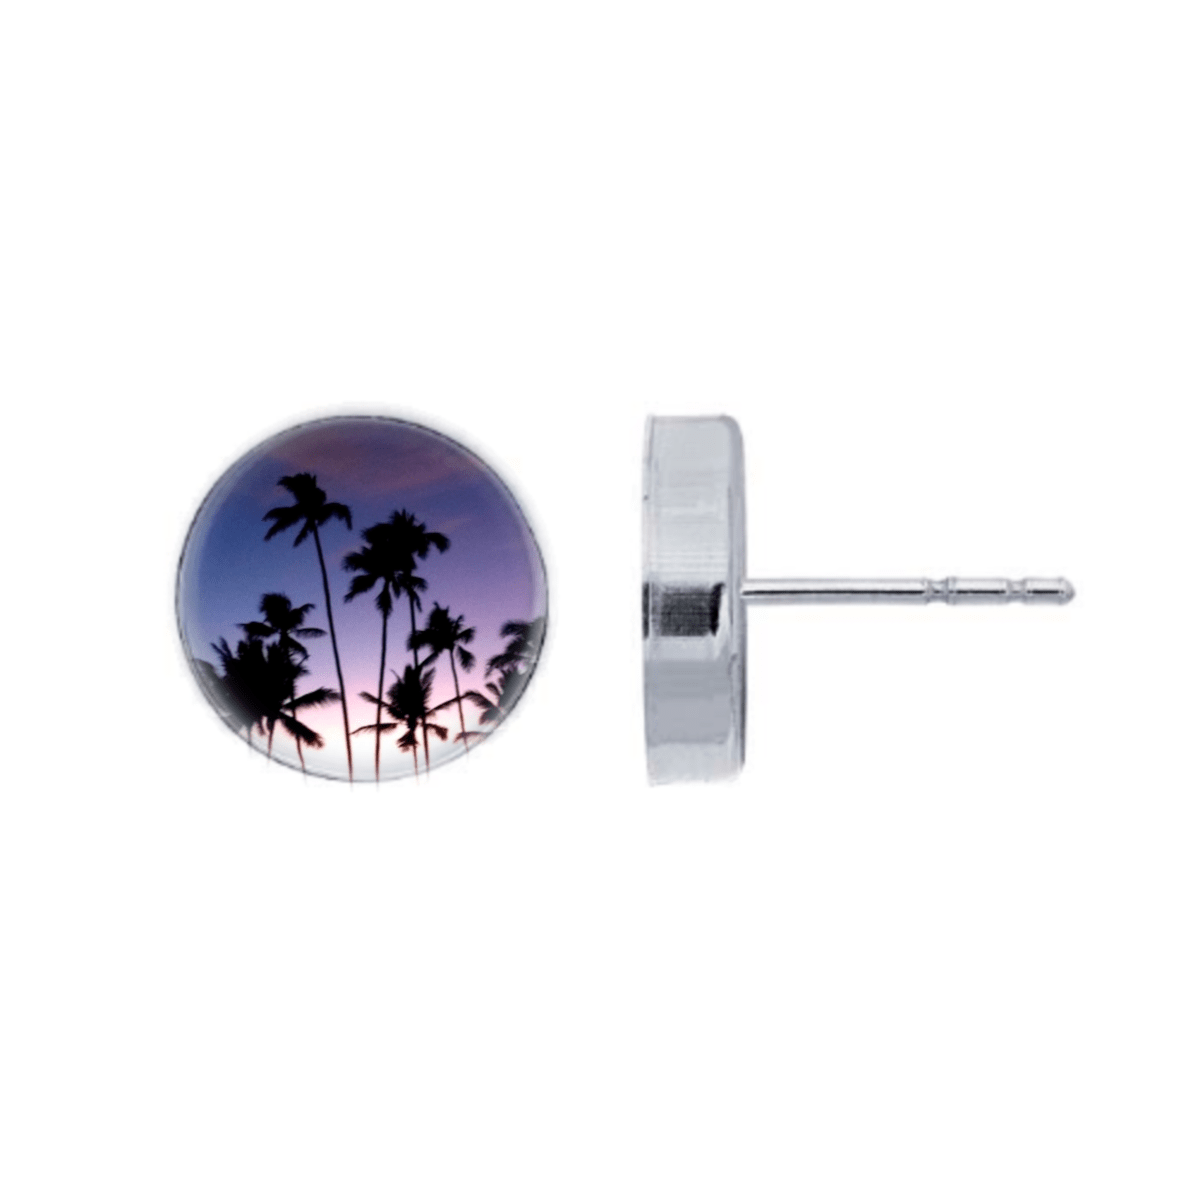 Palm Tree Sunset Post Earrings by Foterra Jewelry